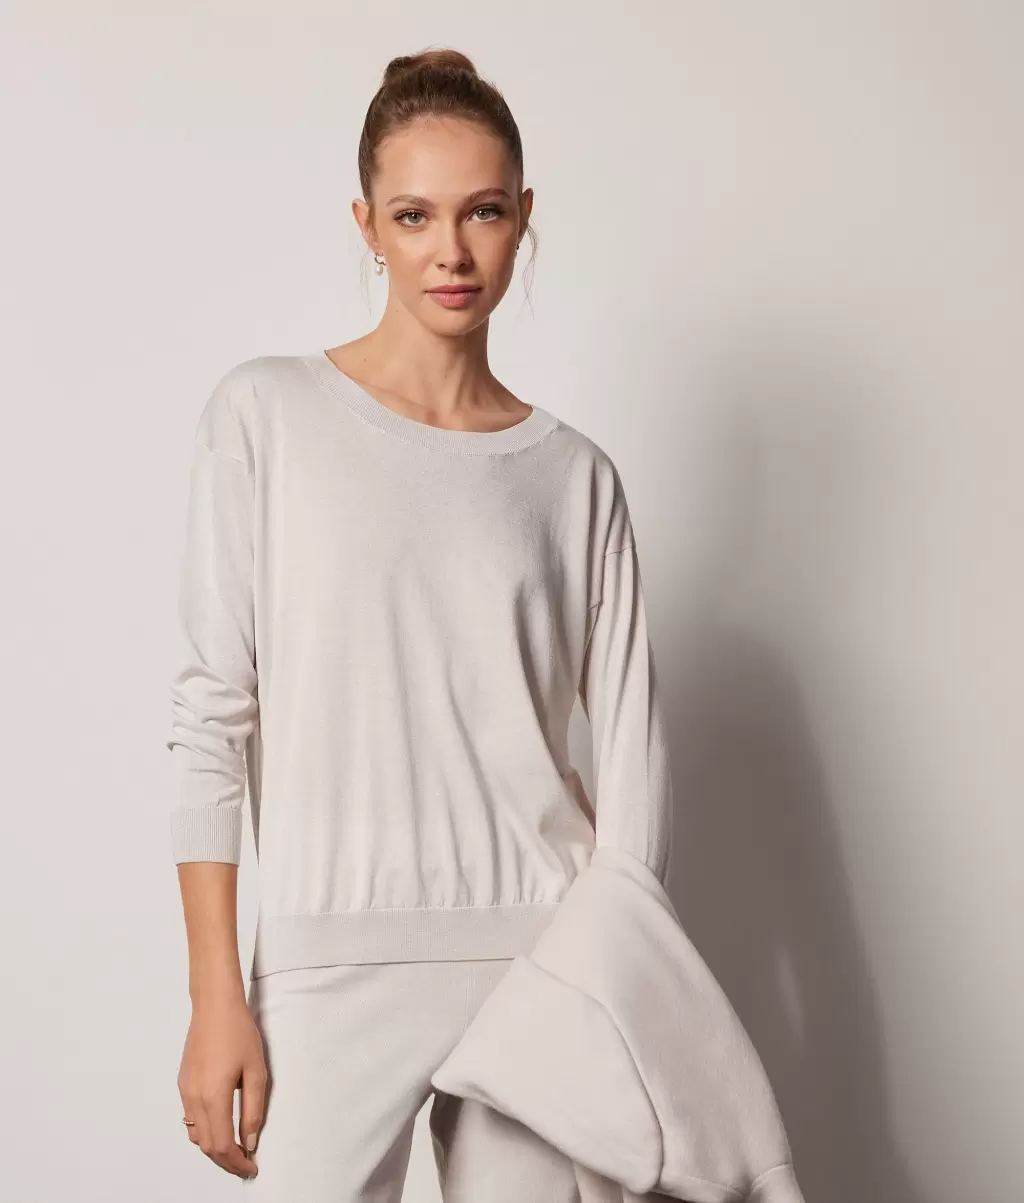 Falconeri Kobieta Swetry Z Okrągłym Dekoltem White Sweter Z Jedwabiu I Bawełny